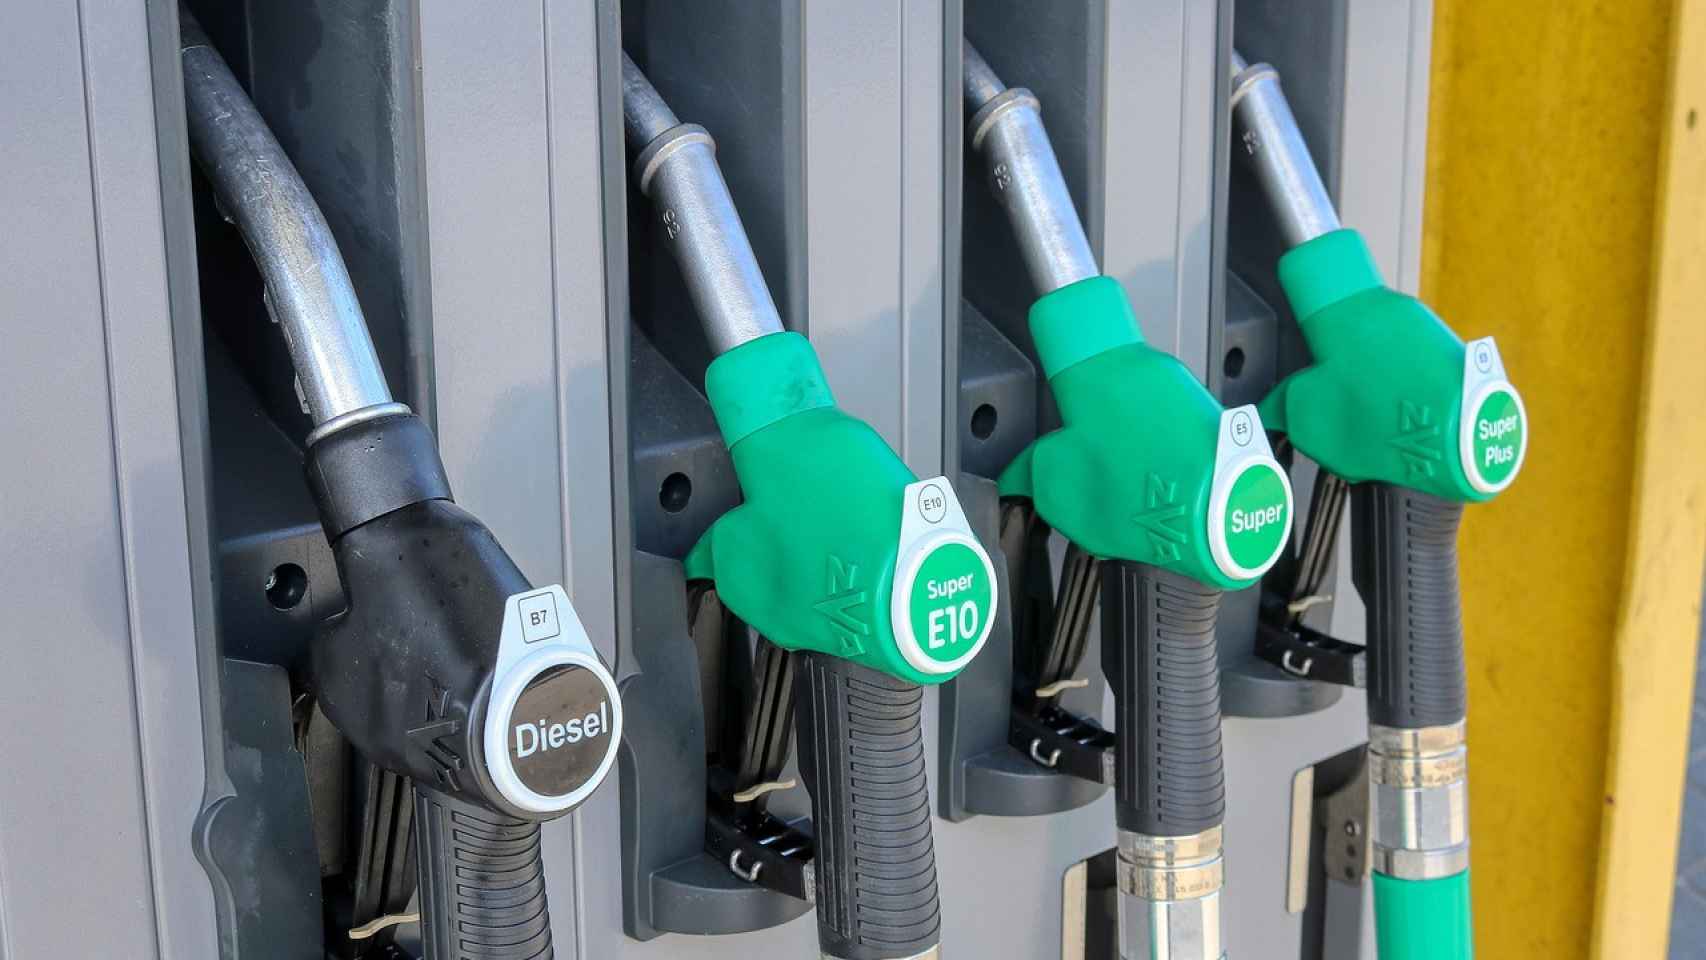 Las gasolineras automáticas crecen en número al tratarse de una alternativa más económica.